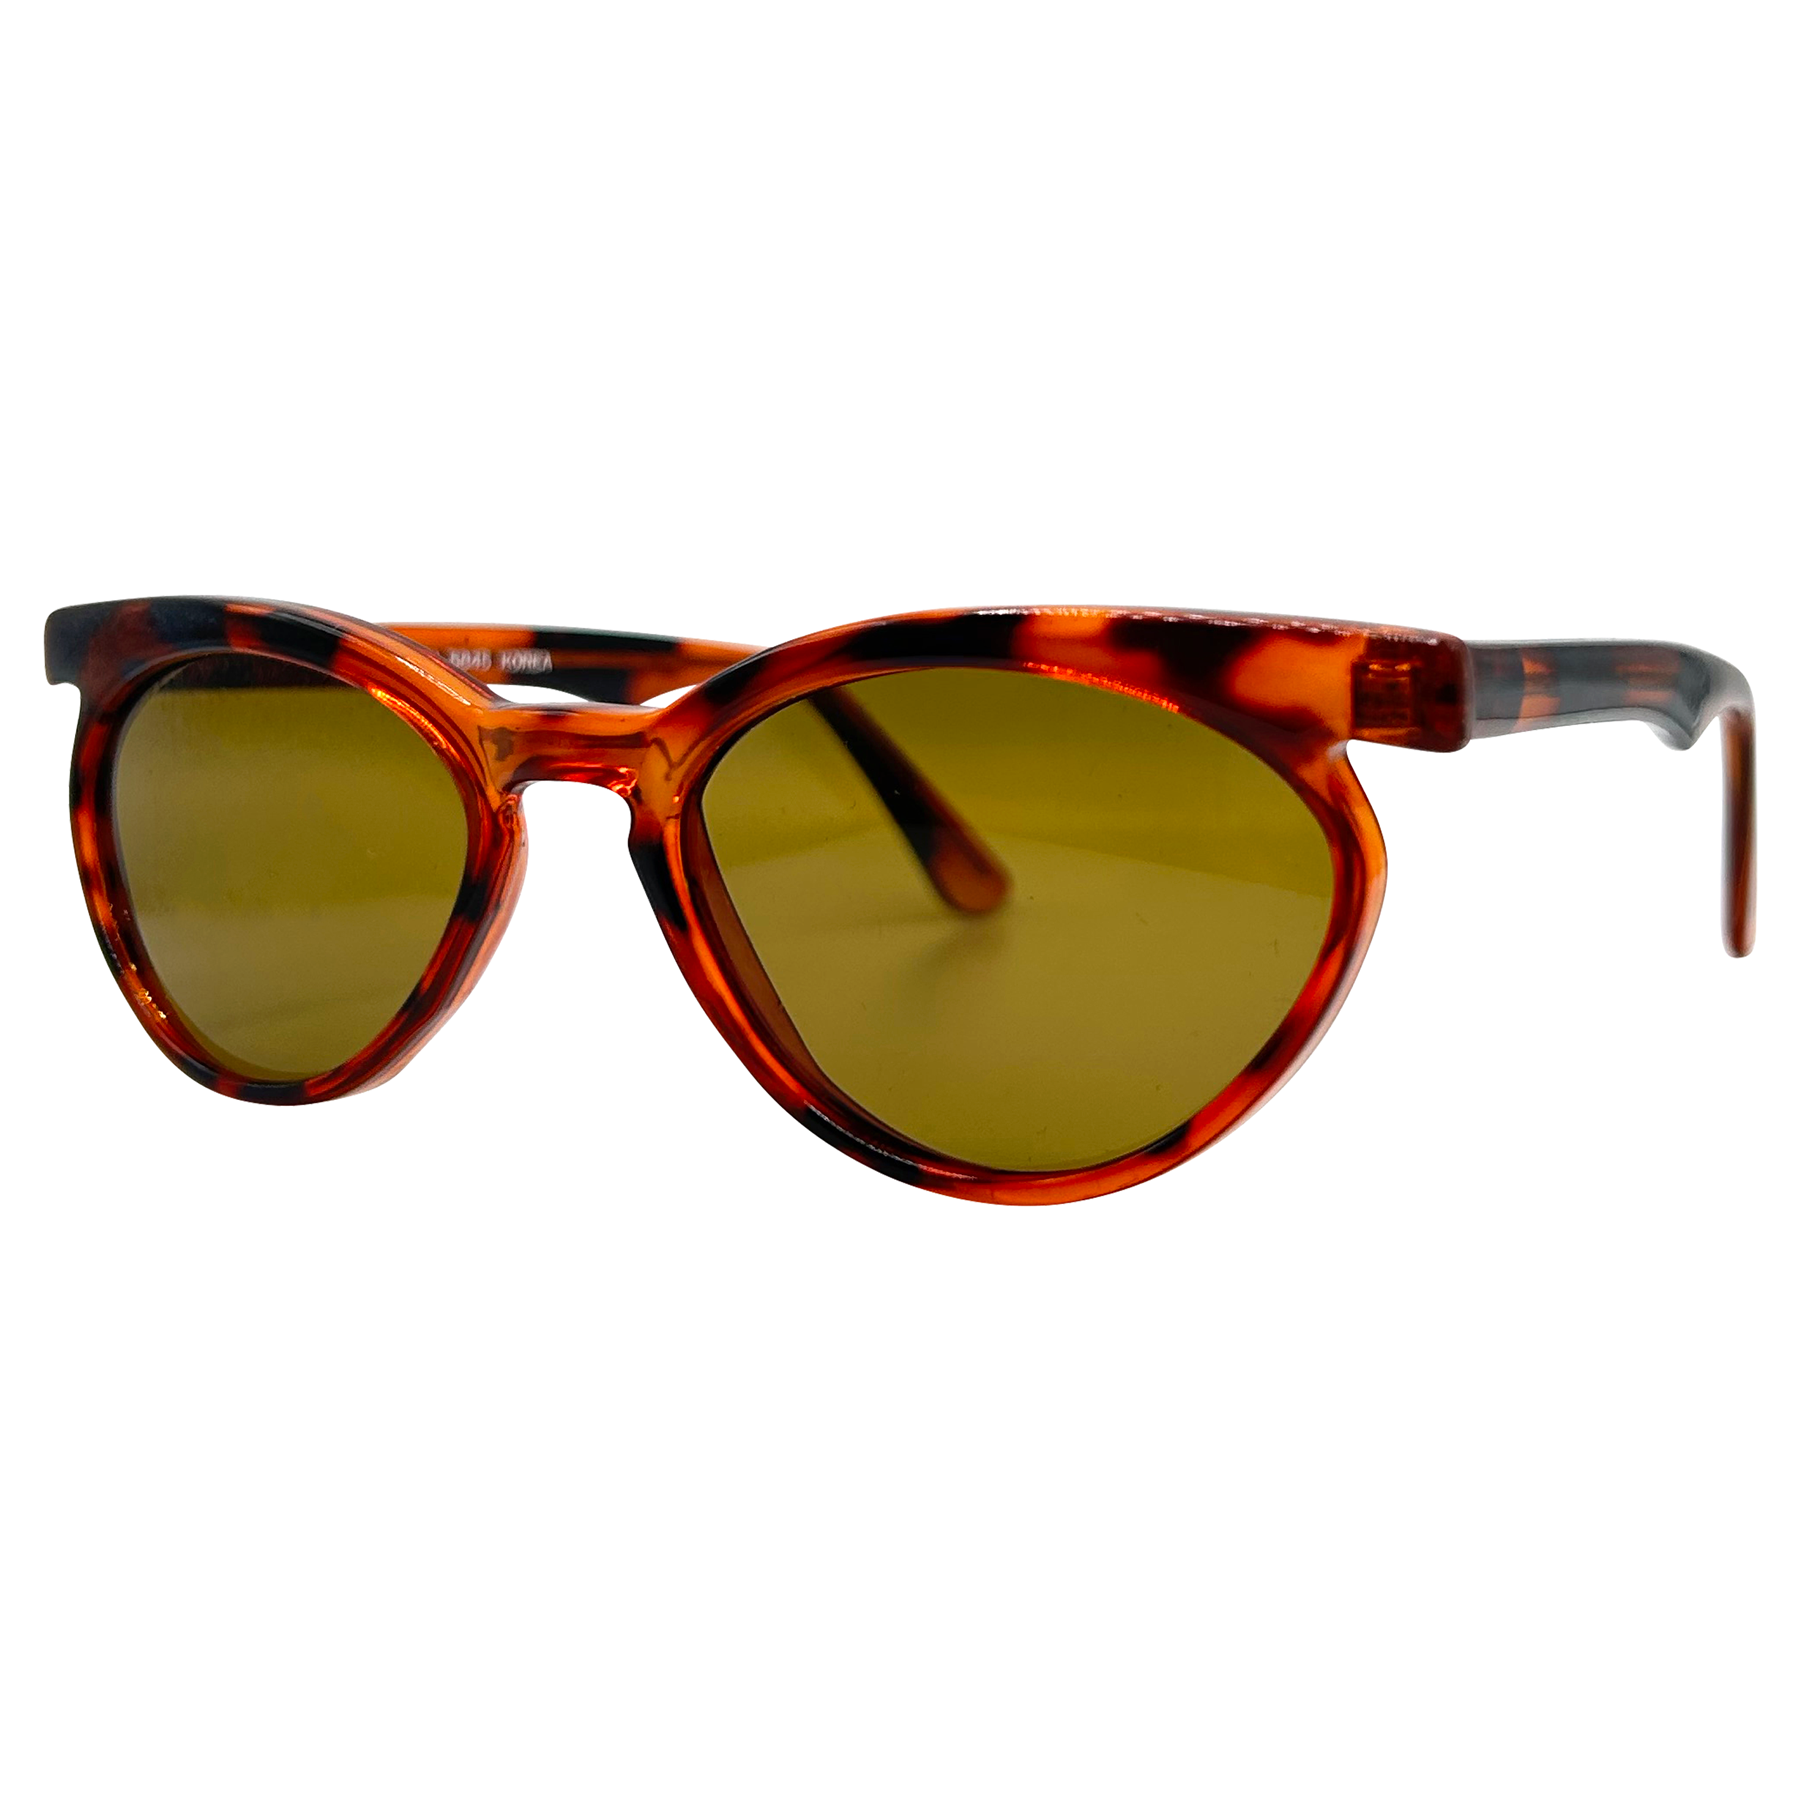 LASHETTE Mod Cat-Eye Sunglasses